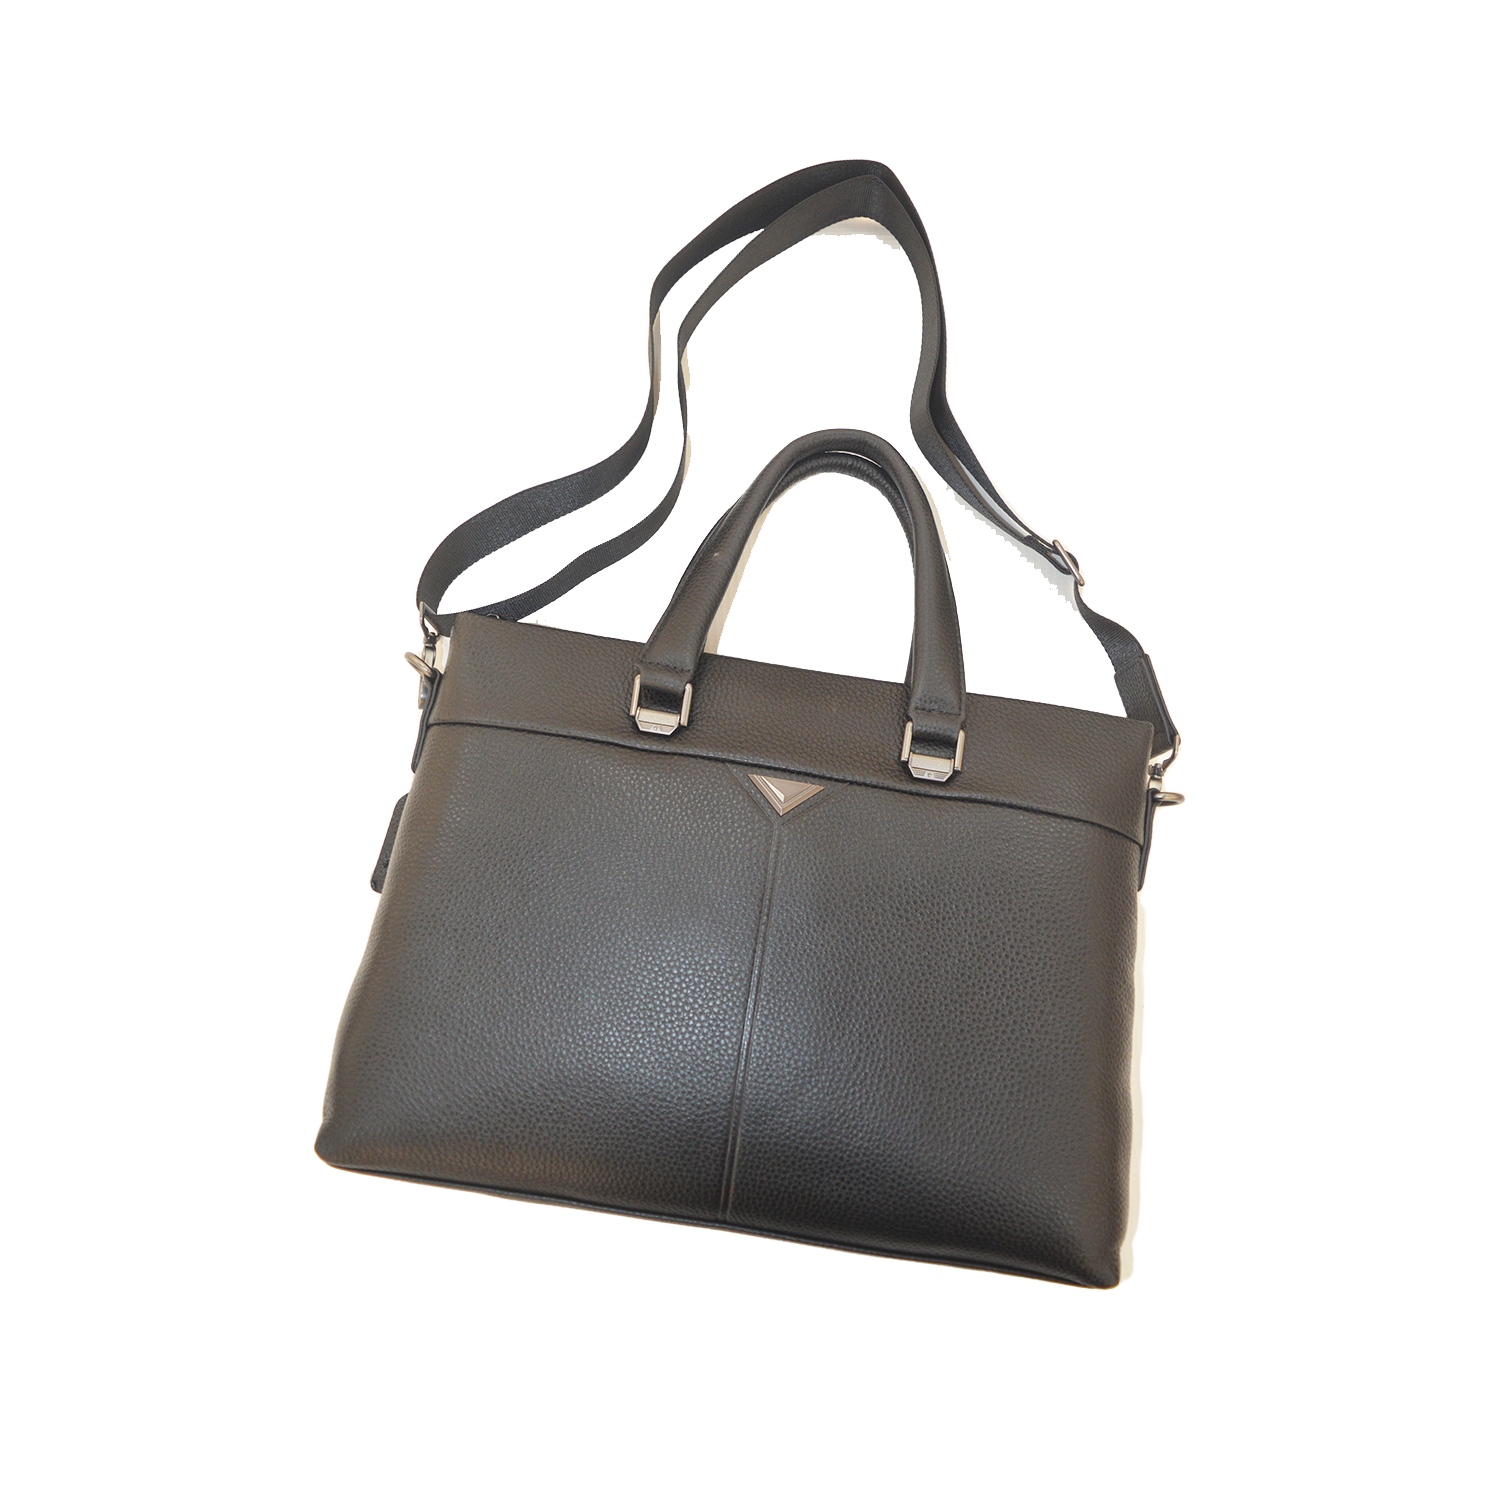 Formal Genuine Cowhide Leather Briefcase Shoulder Laptop Business Bag for Men & Women